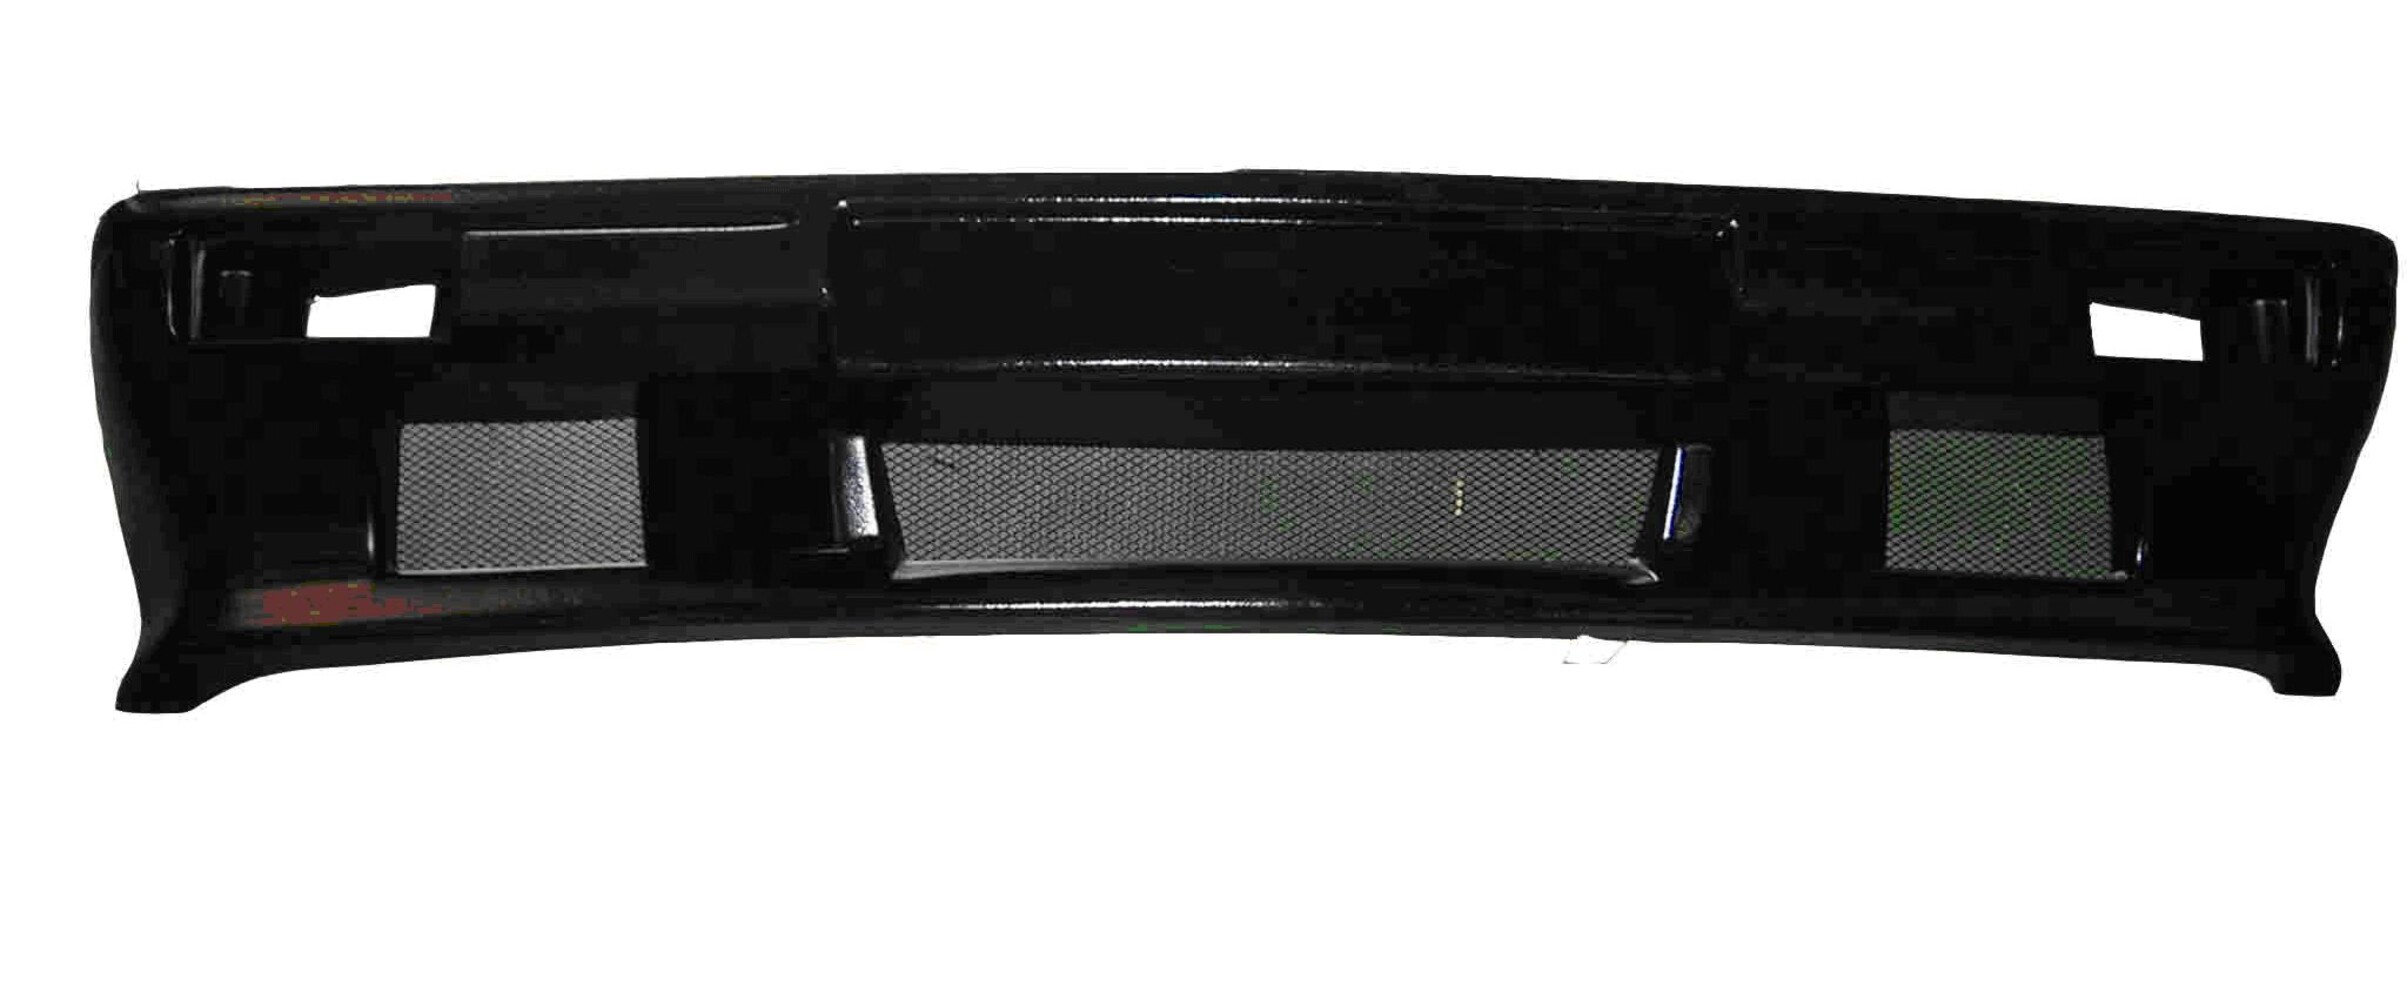 Передний бампер неокрашенный для ВАЗ 2101-03, 2106